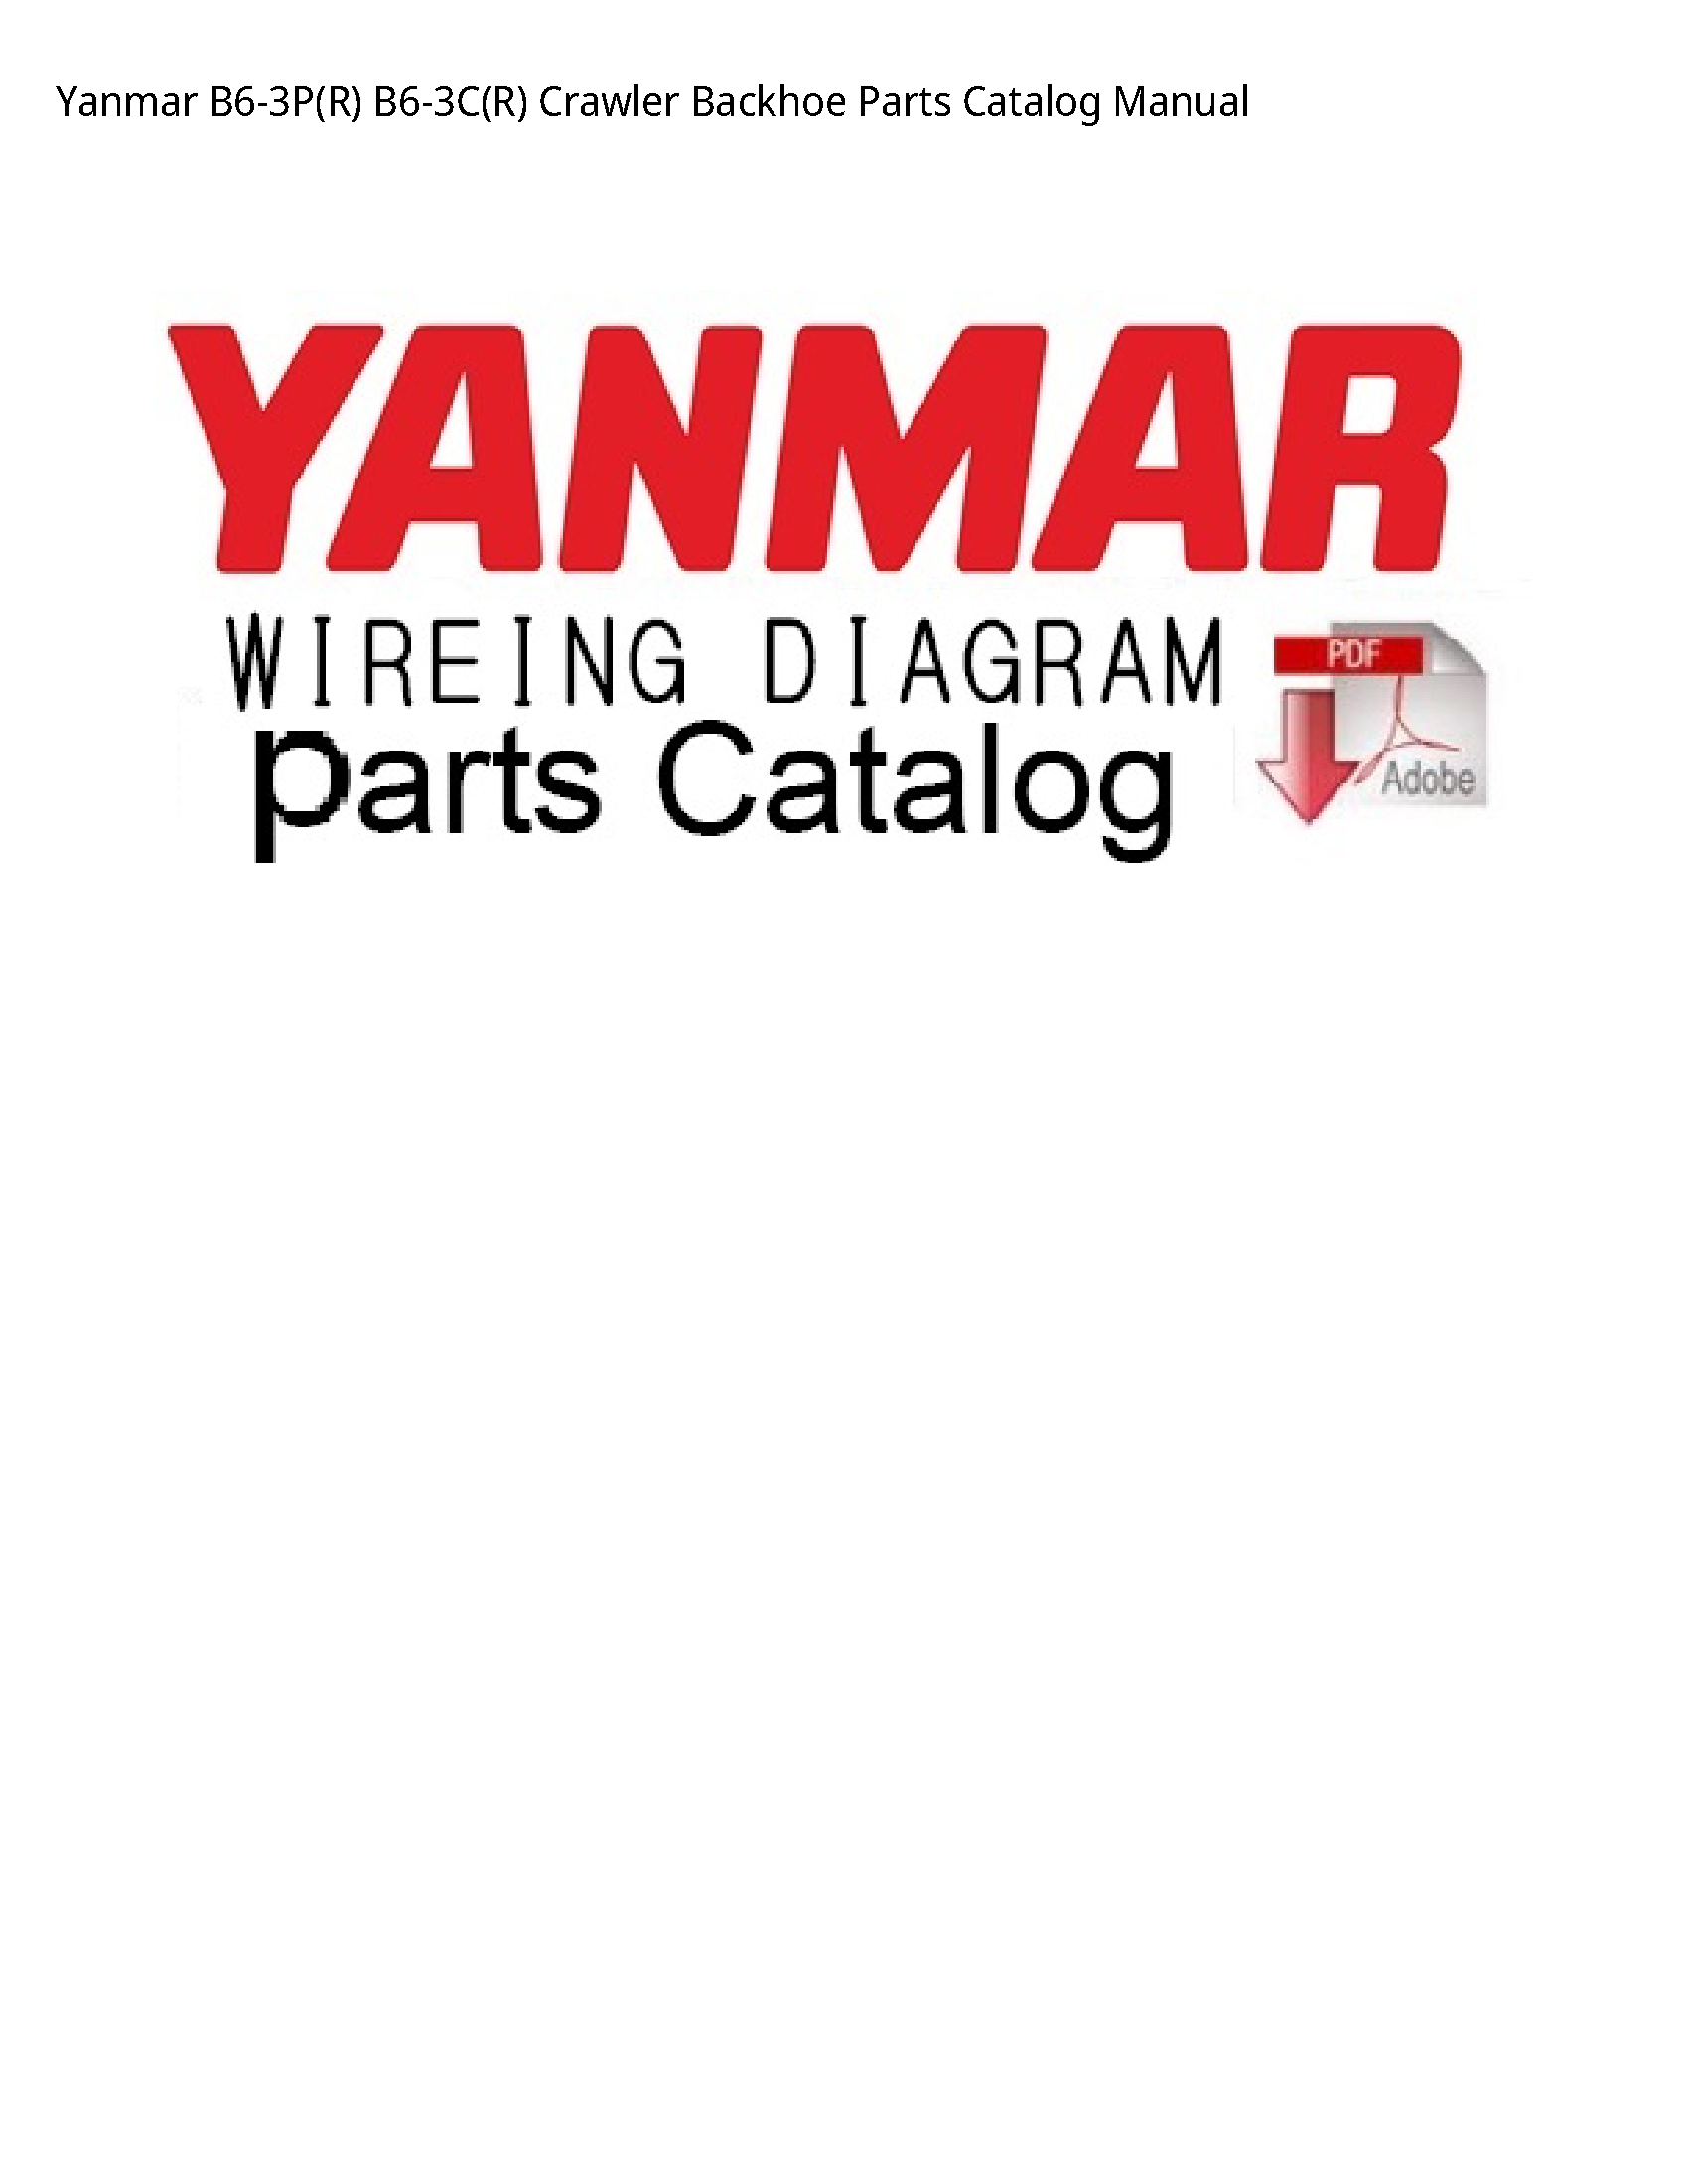 Yanmar B6-3P(R) Crawler Backhoe Parts Catalog manual